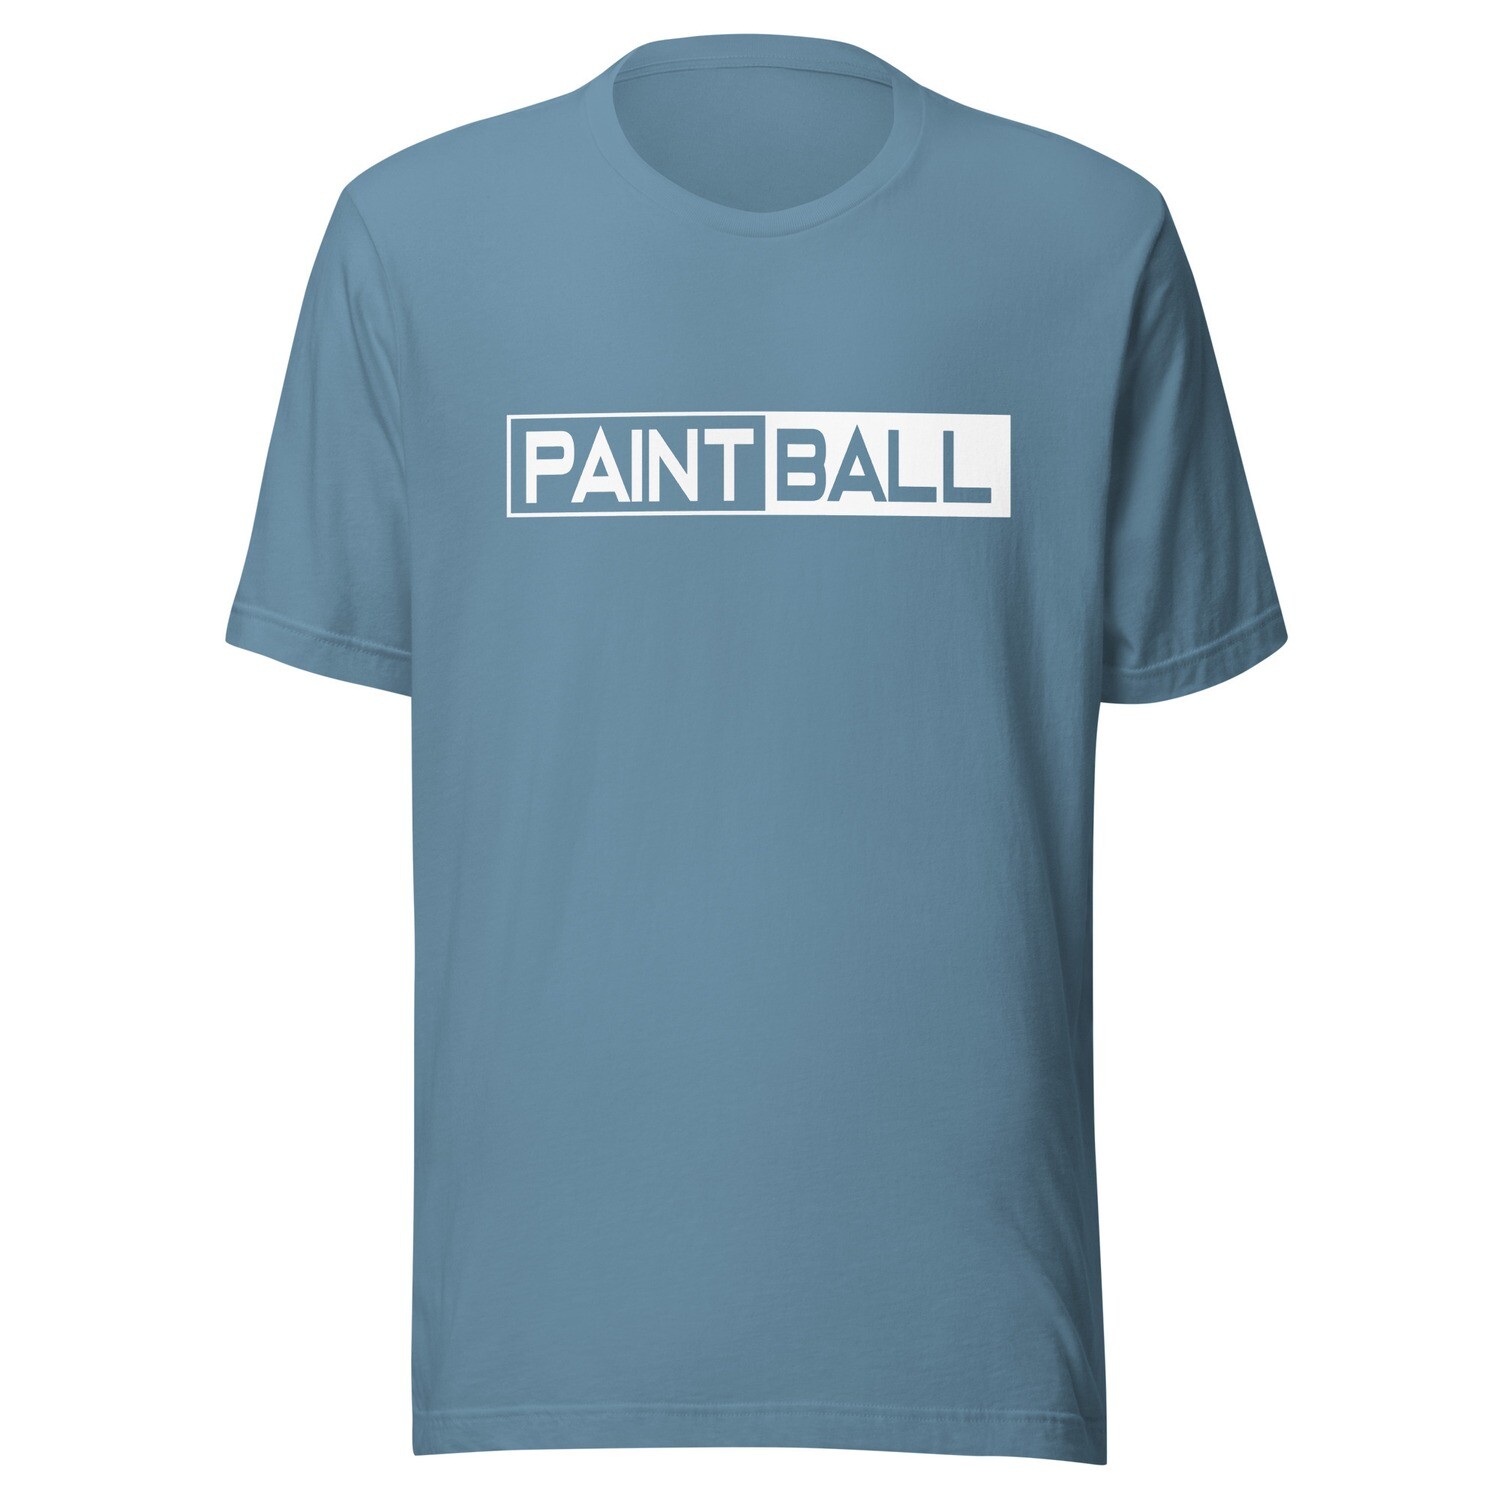 T-shirt - Paintball SPLIT White Print (Multiple Colors)